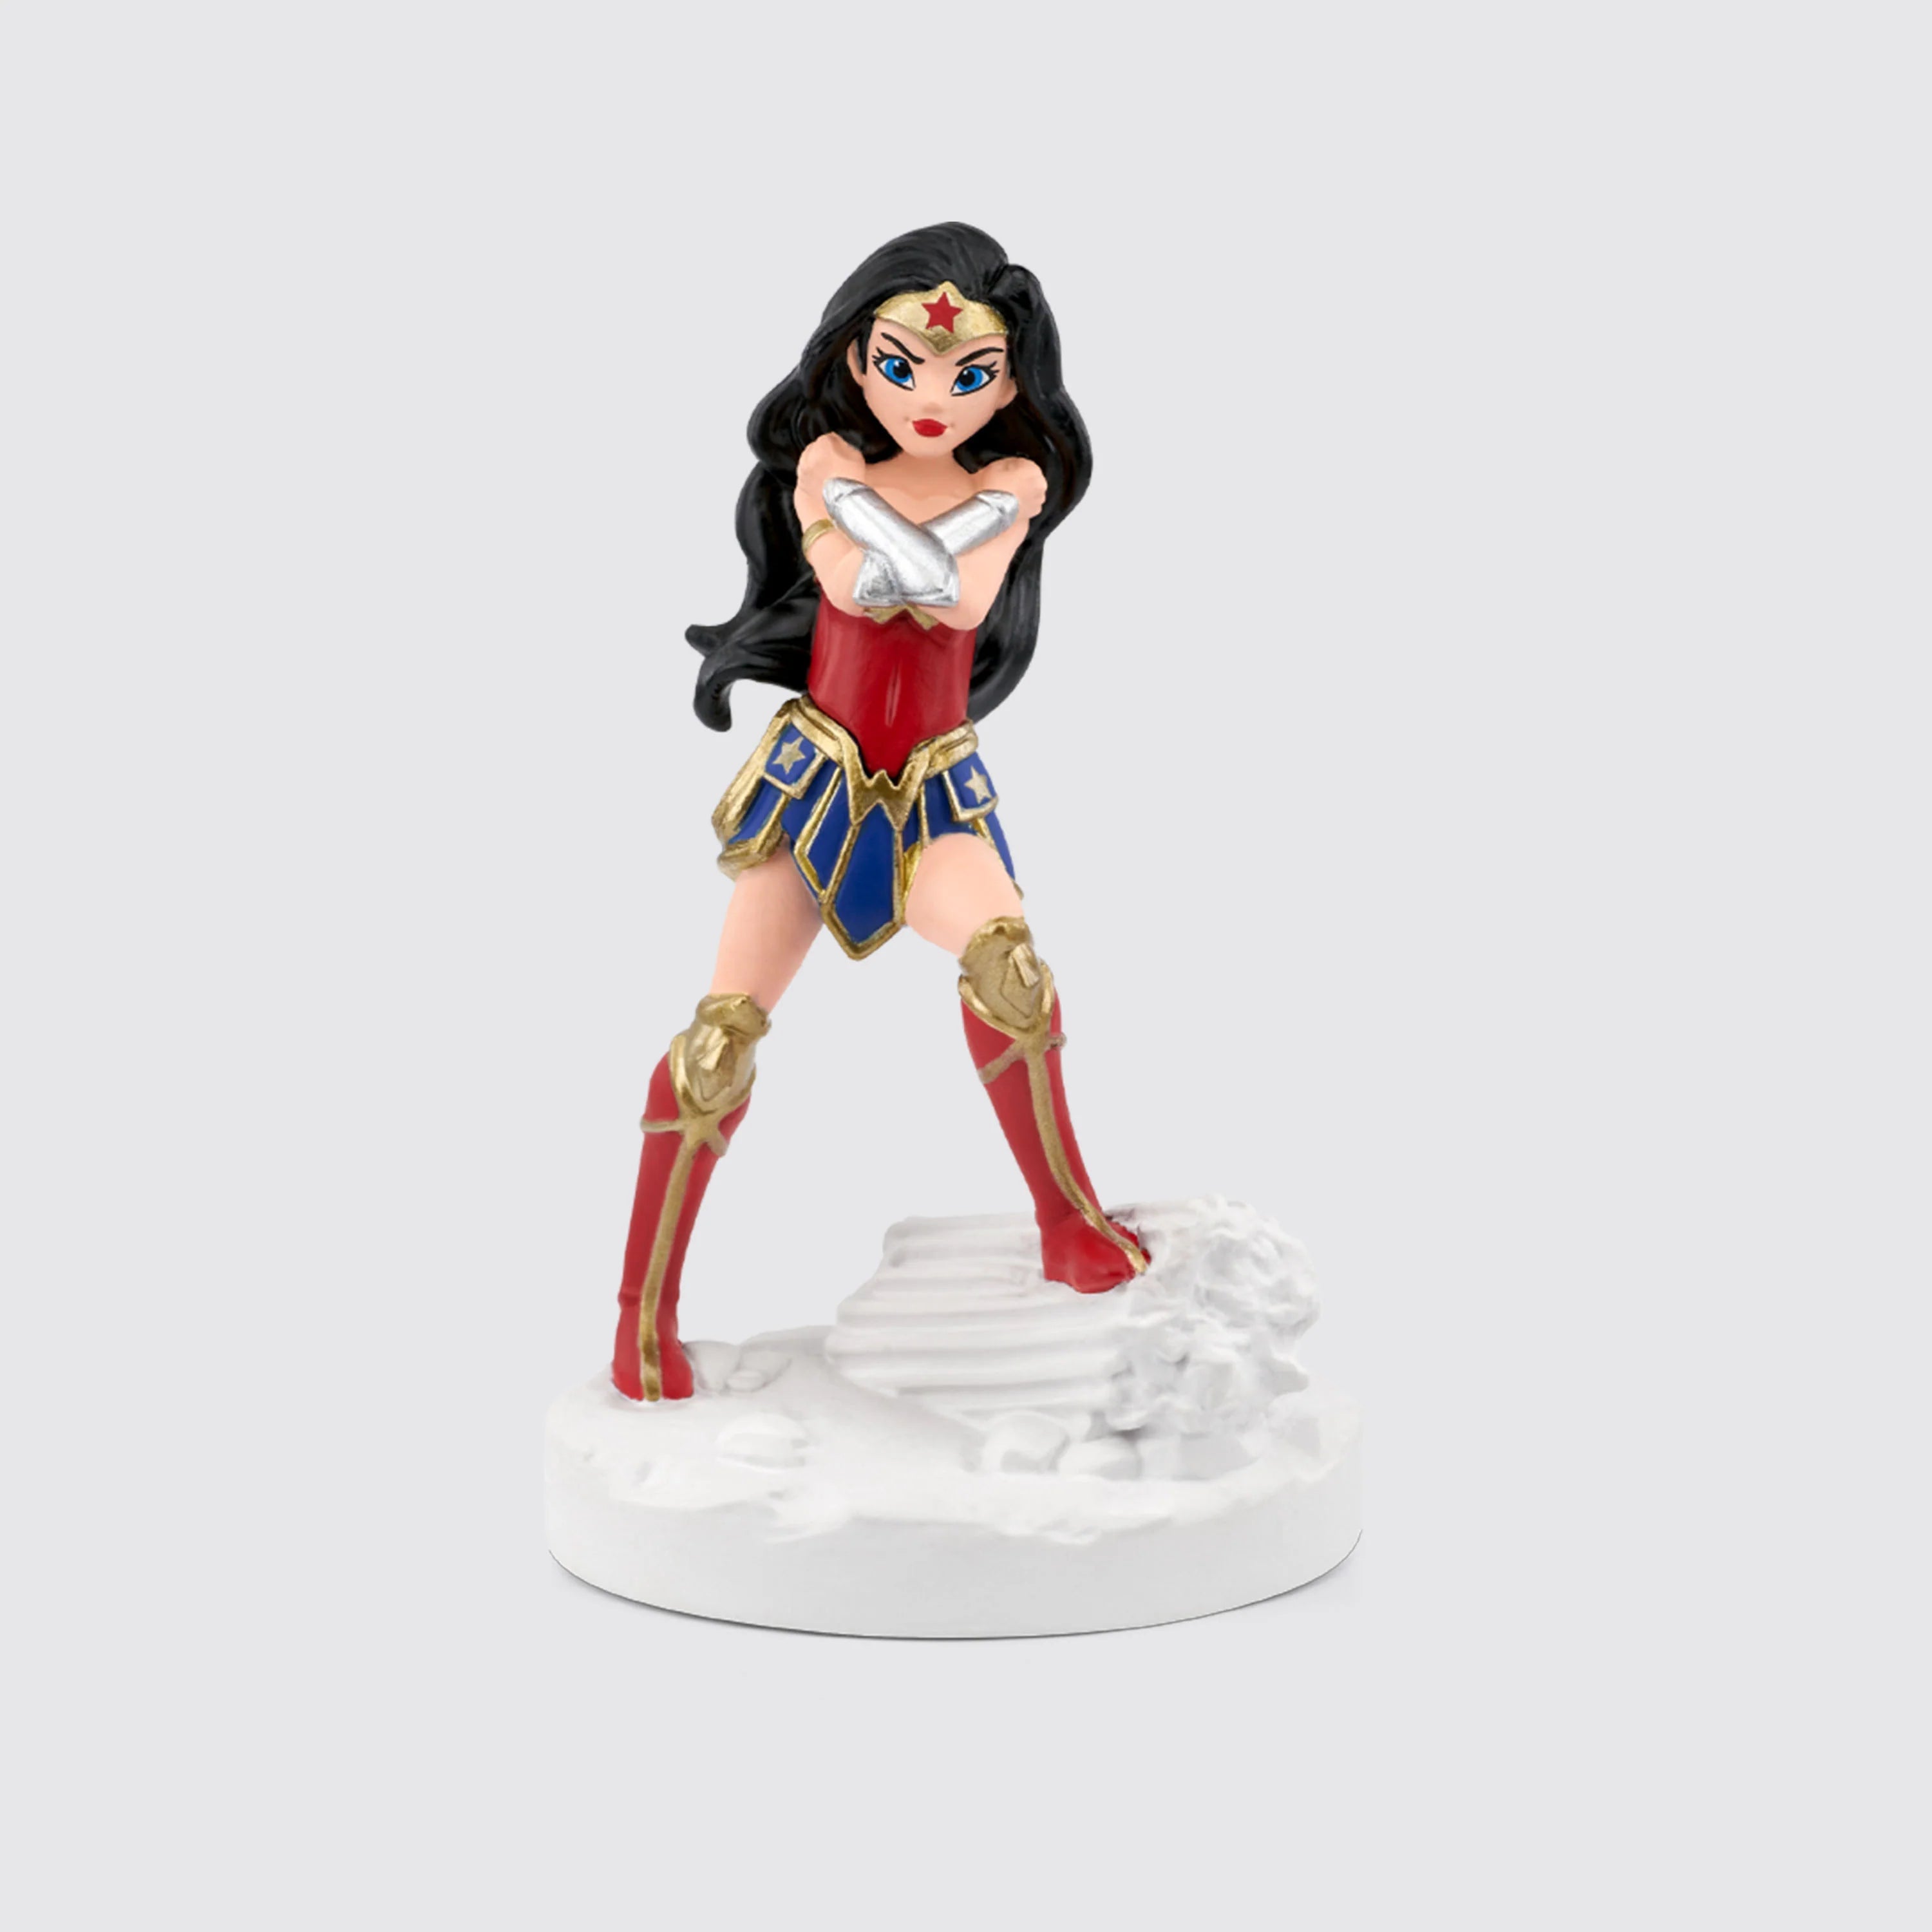 Tonies-Tonies Characters - DC: Wonder Woman-10001344-Legacy Toys